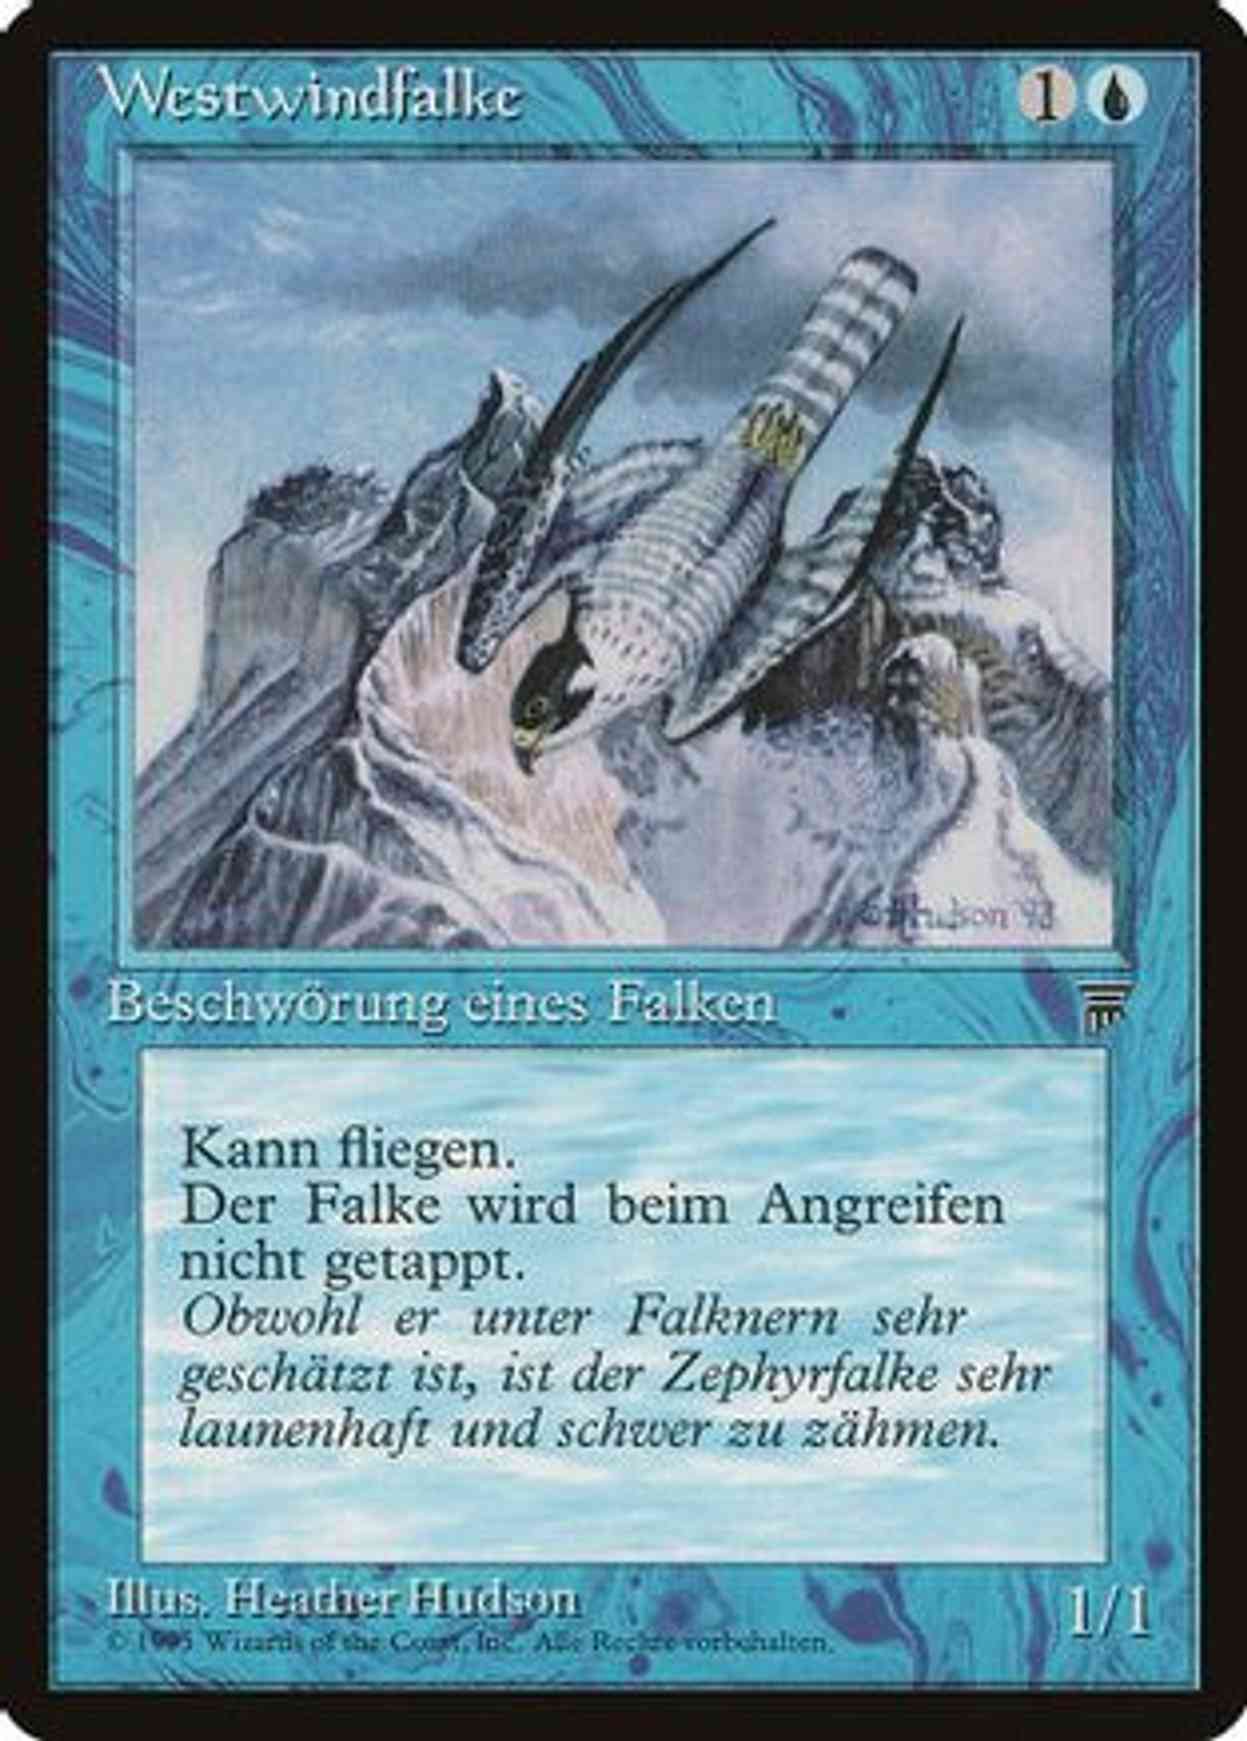 Zephyr Falcon (German) - "Westwindfalke" magic card front